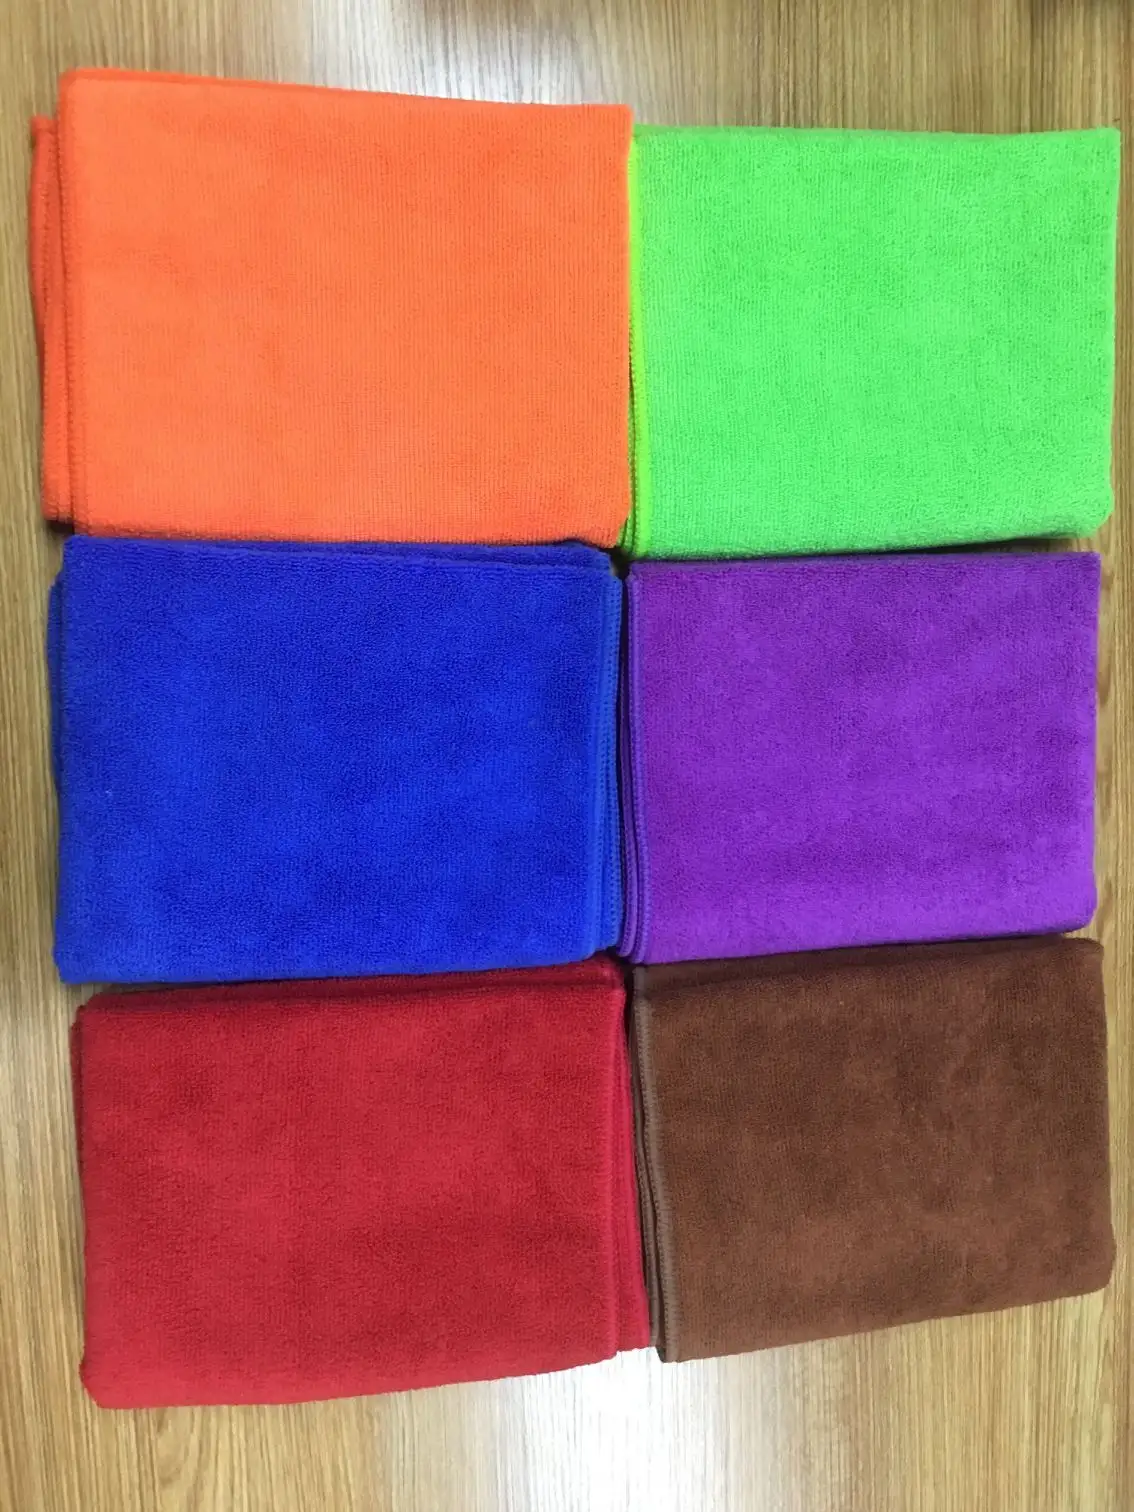 Hoge Kwaliteit Microfiber Auto Wassen Handdoek Milieuvriendelijk Schoonmaakdoek Voor Voertuigen In Groen Rood Verpakt Opp Zak Doos